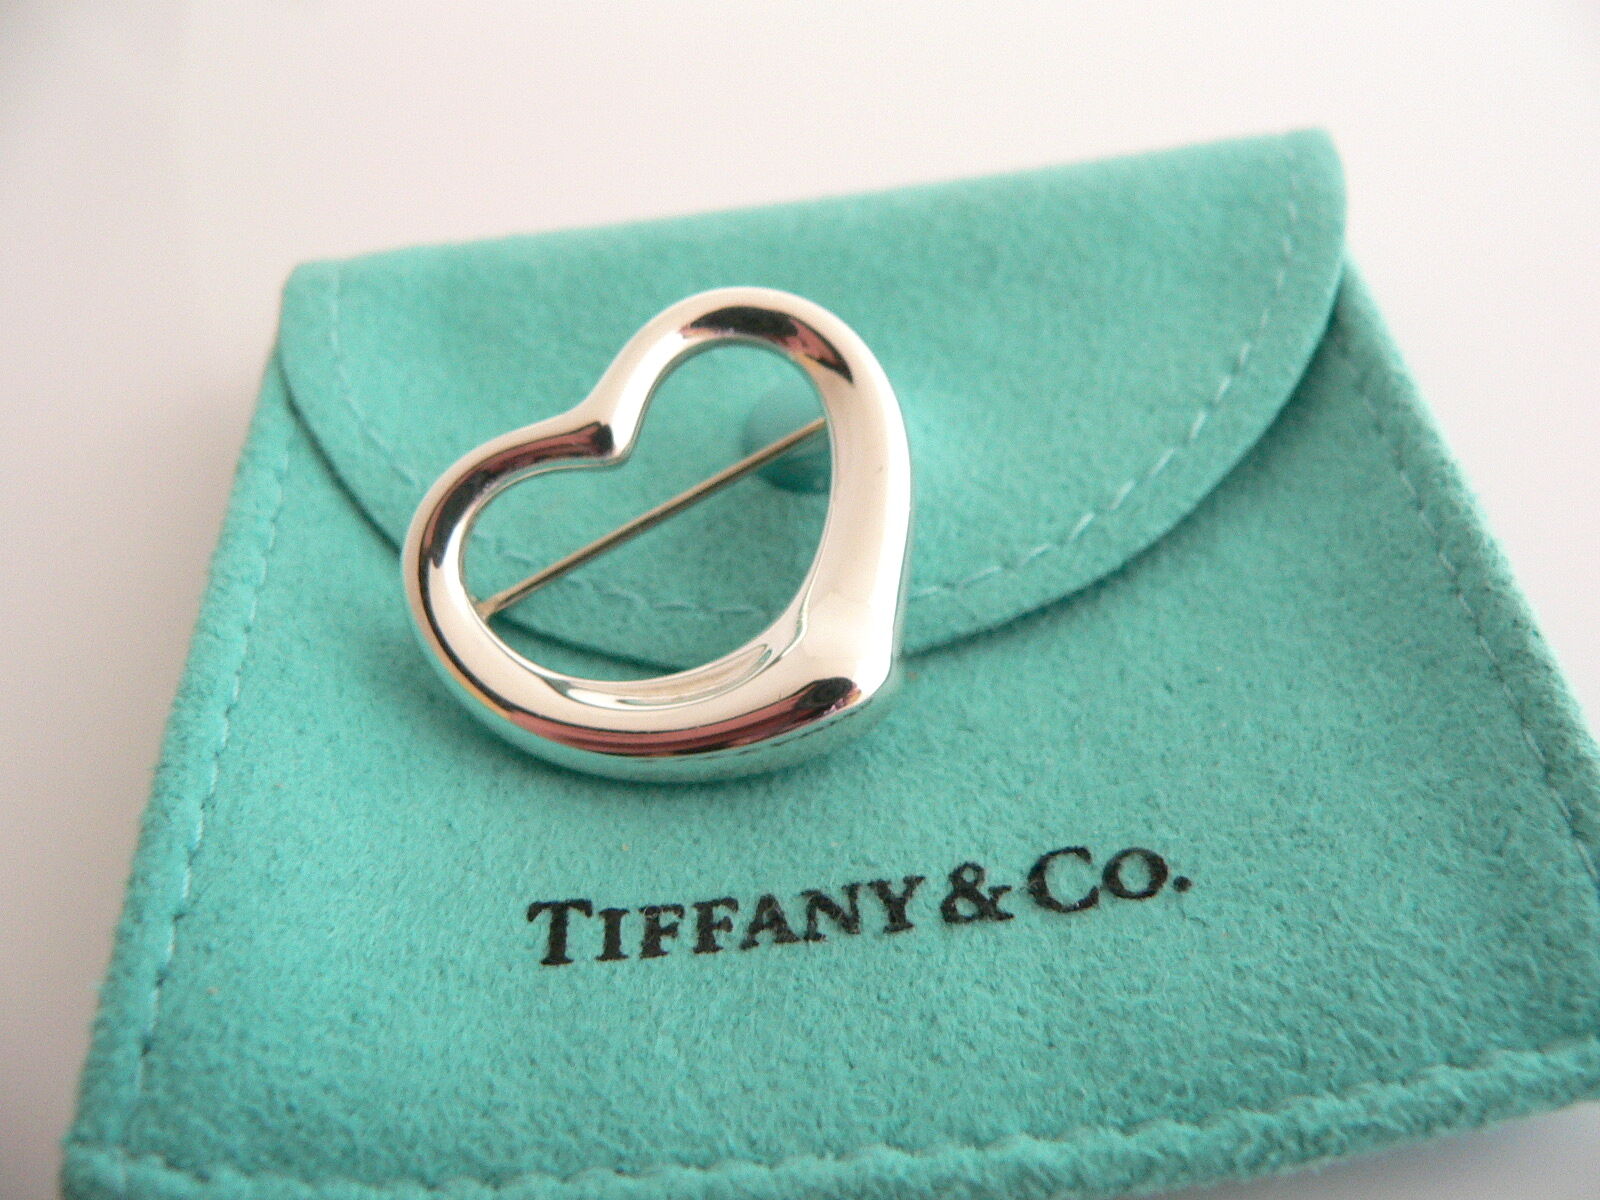 Tiffany & Co Silver Peretti Open Heart Brooch Pin Rare Gift Love Pouch